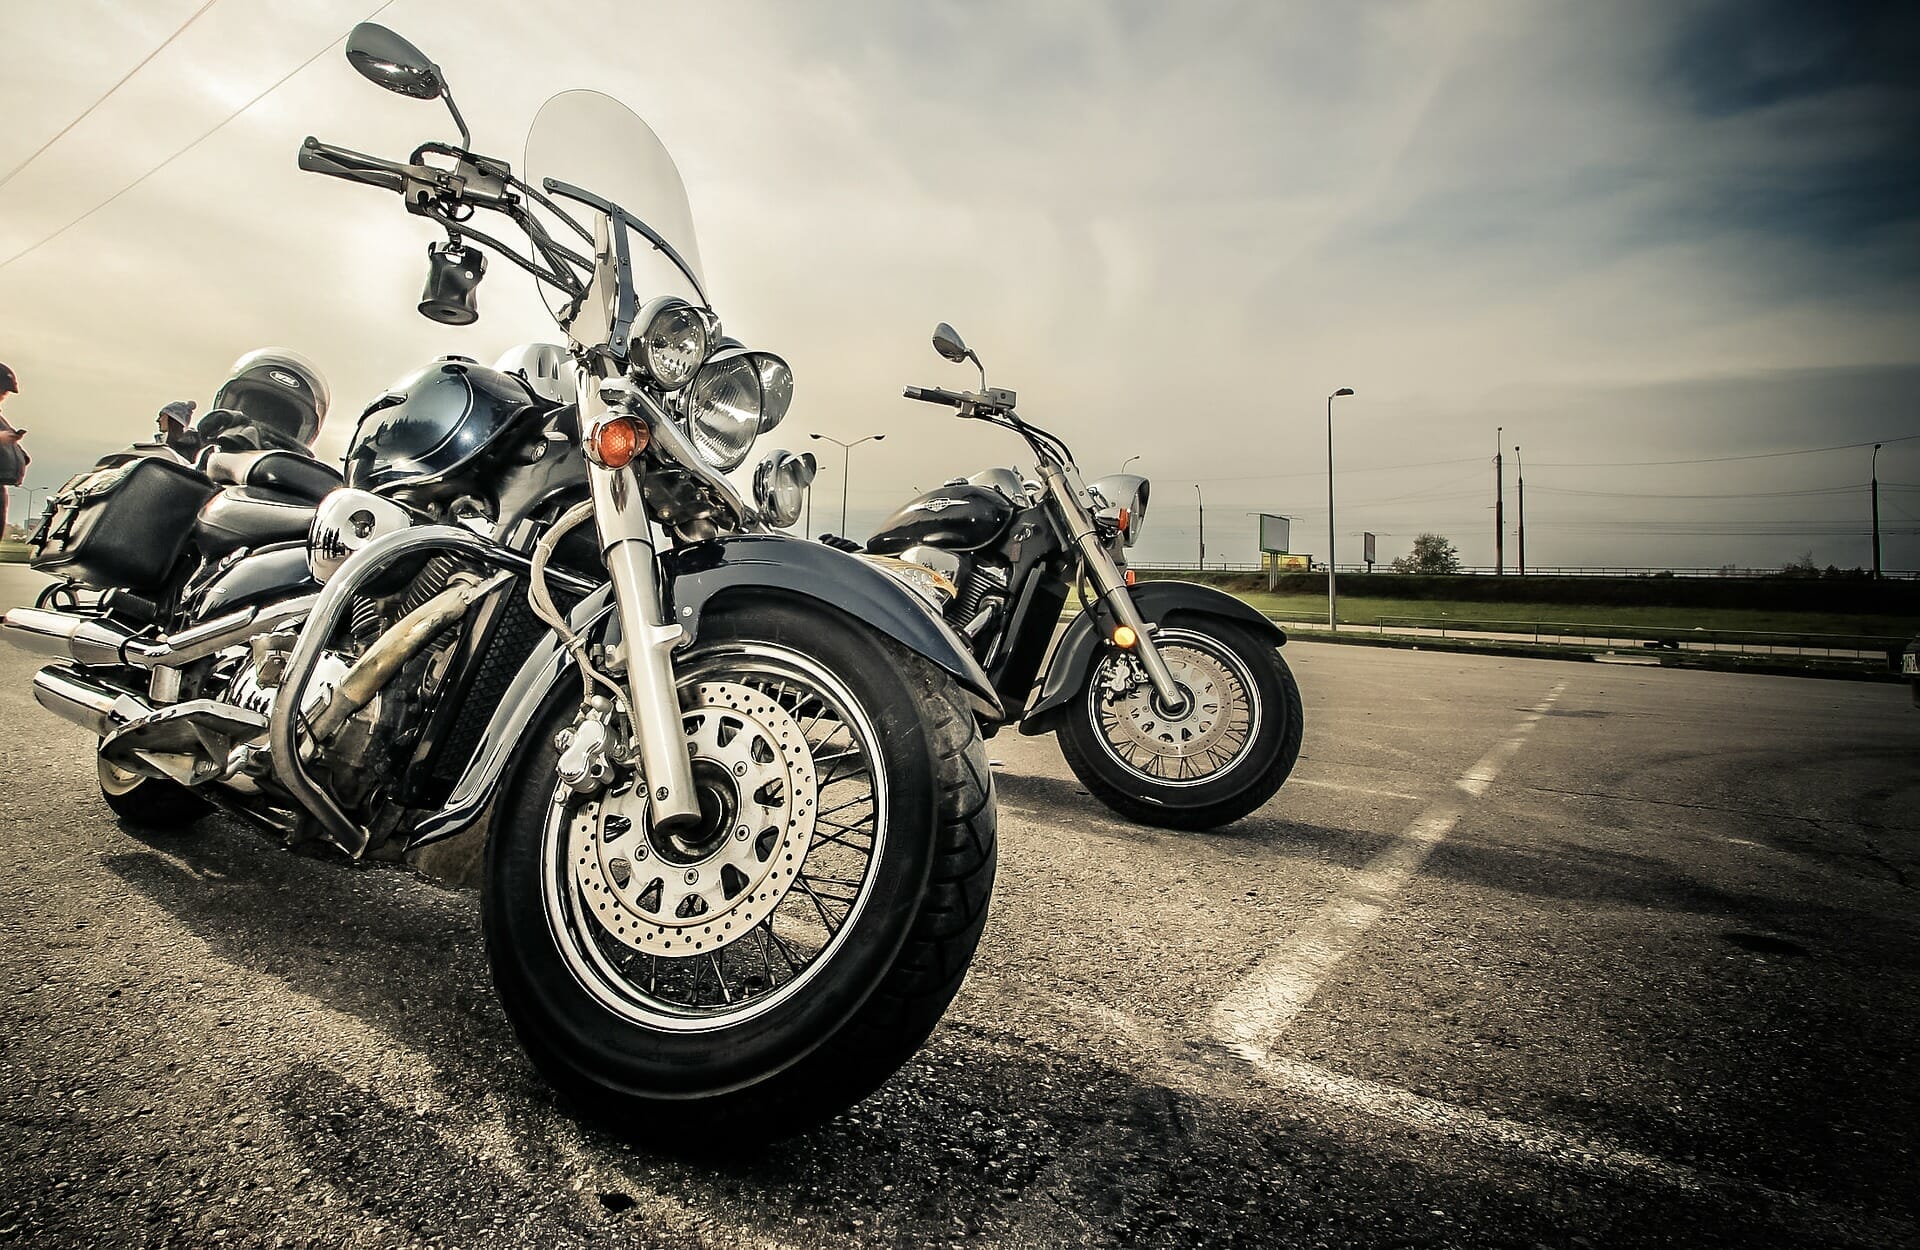 Widerstand gegen übertriebene Forderung des Bundesrates wegen Motorradlärm
- auch in der MOTORRAD NACHRICHTEN APP